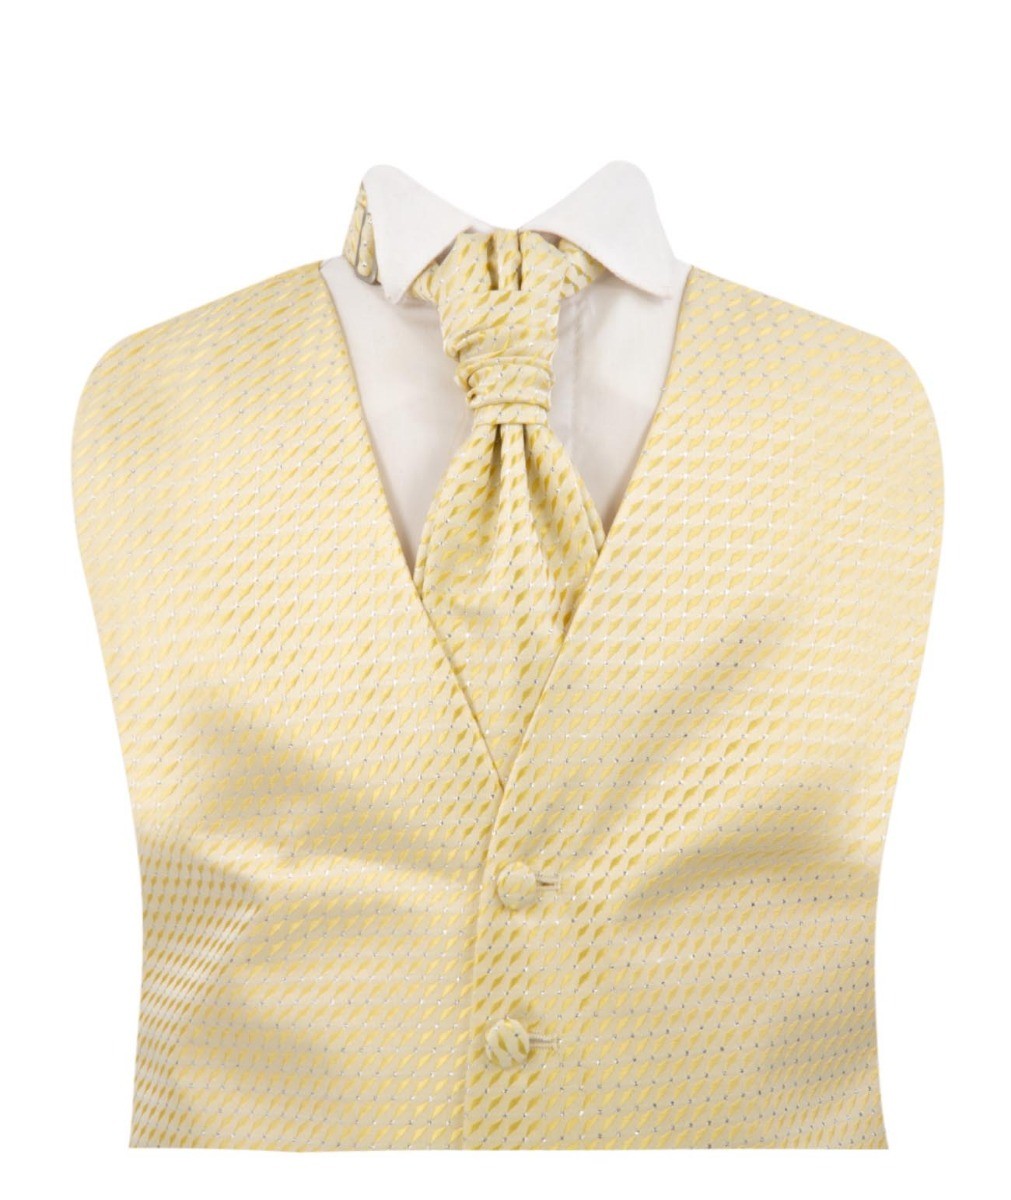 Jungen Weißer Anzug mit Goldenem Weste und Krawatten-Set